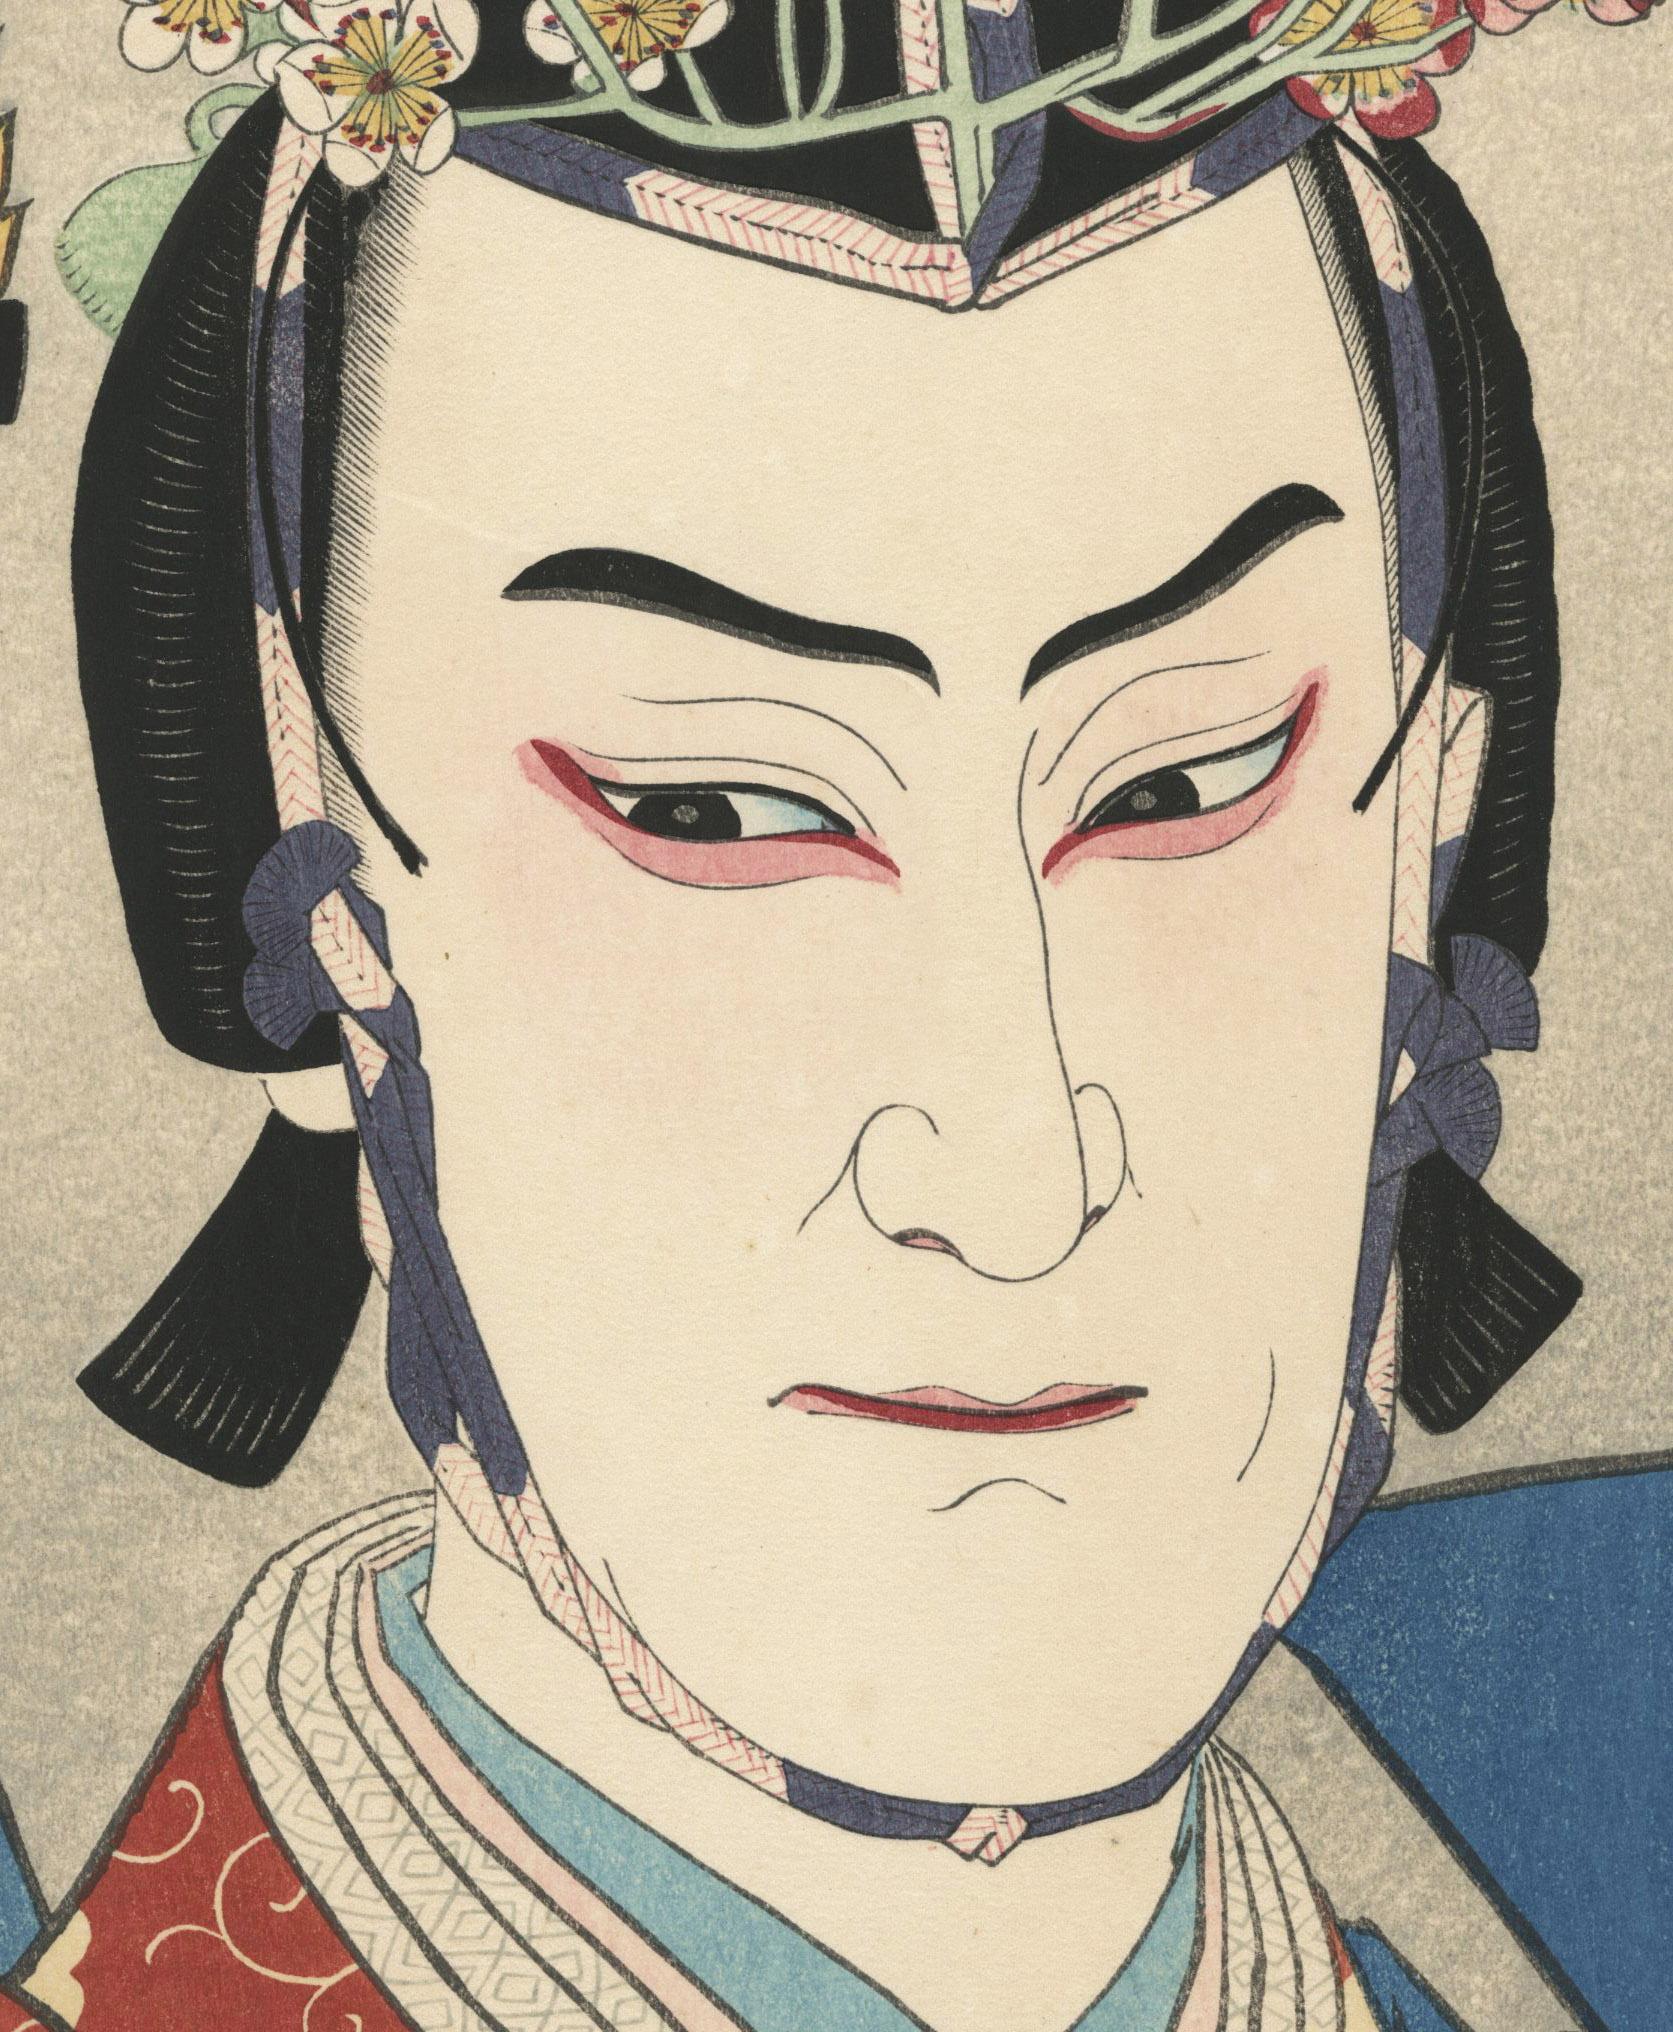 Morita Kanya XIII. Als Genta Kagesue im Stück Genta Kando 
Farbholzschnitt, 1928
Signiert und gestempelt Mitte rechts am Rand
Natori-Stempel am linken unteren Bildrand
Serie: Collection of Creative Print Portraits by Shunsen, dies ist die Nr. 28 der